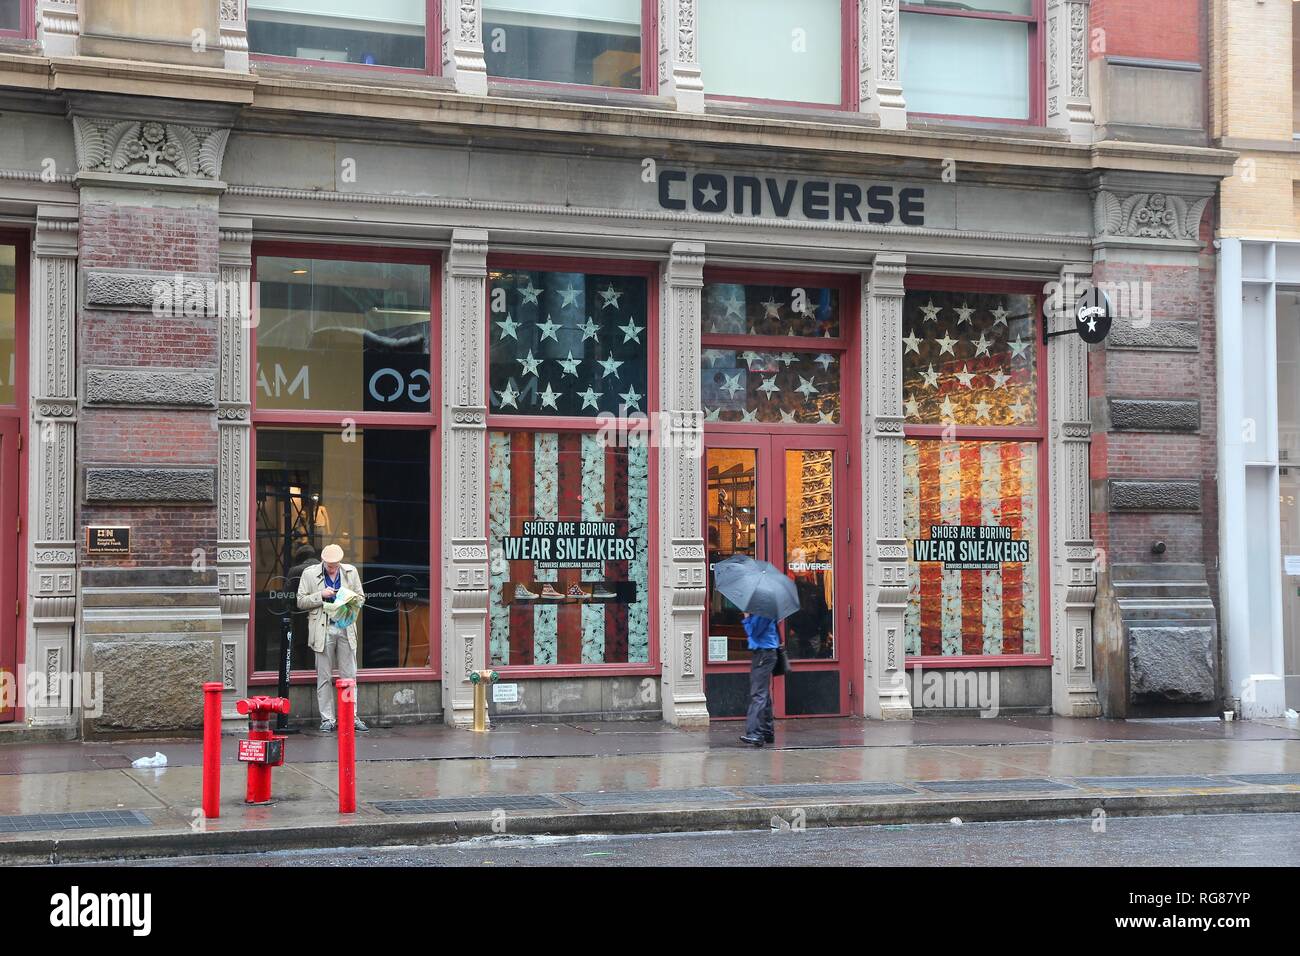 buy \u003e tiendas de converse en estados unidos, Up to 64% OFF